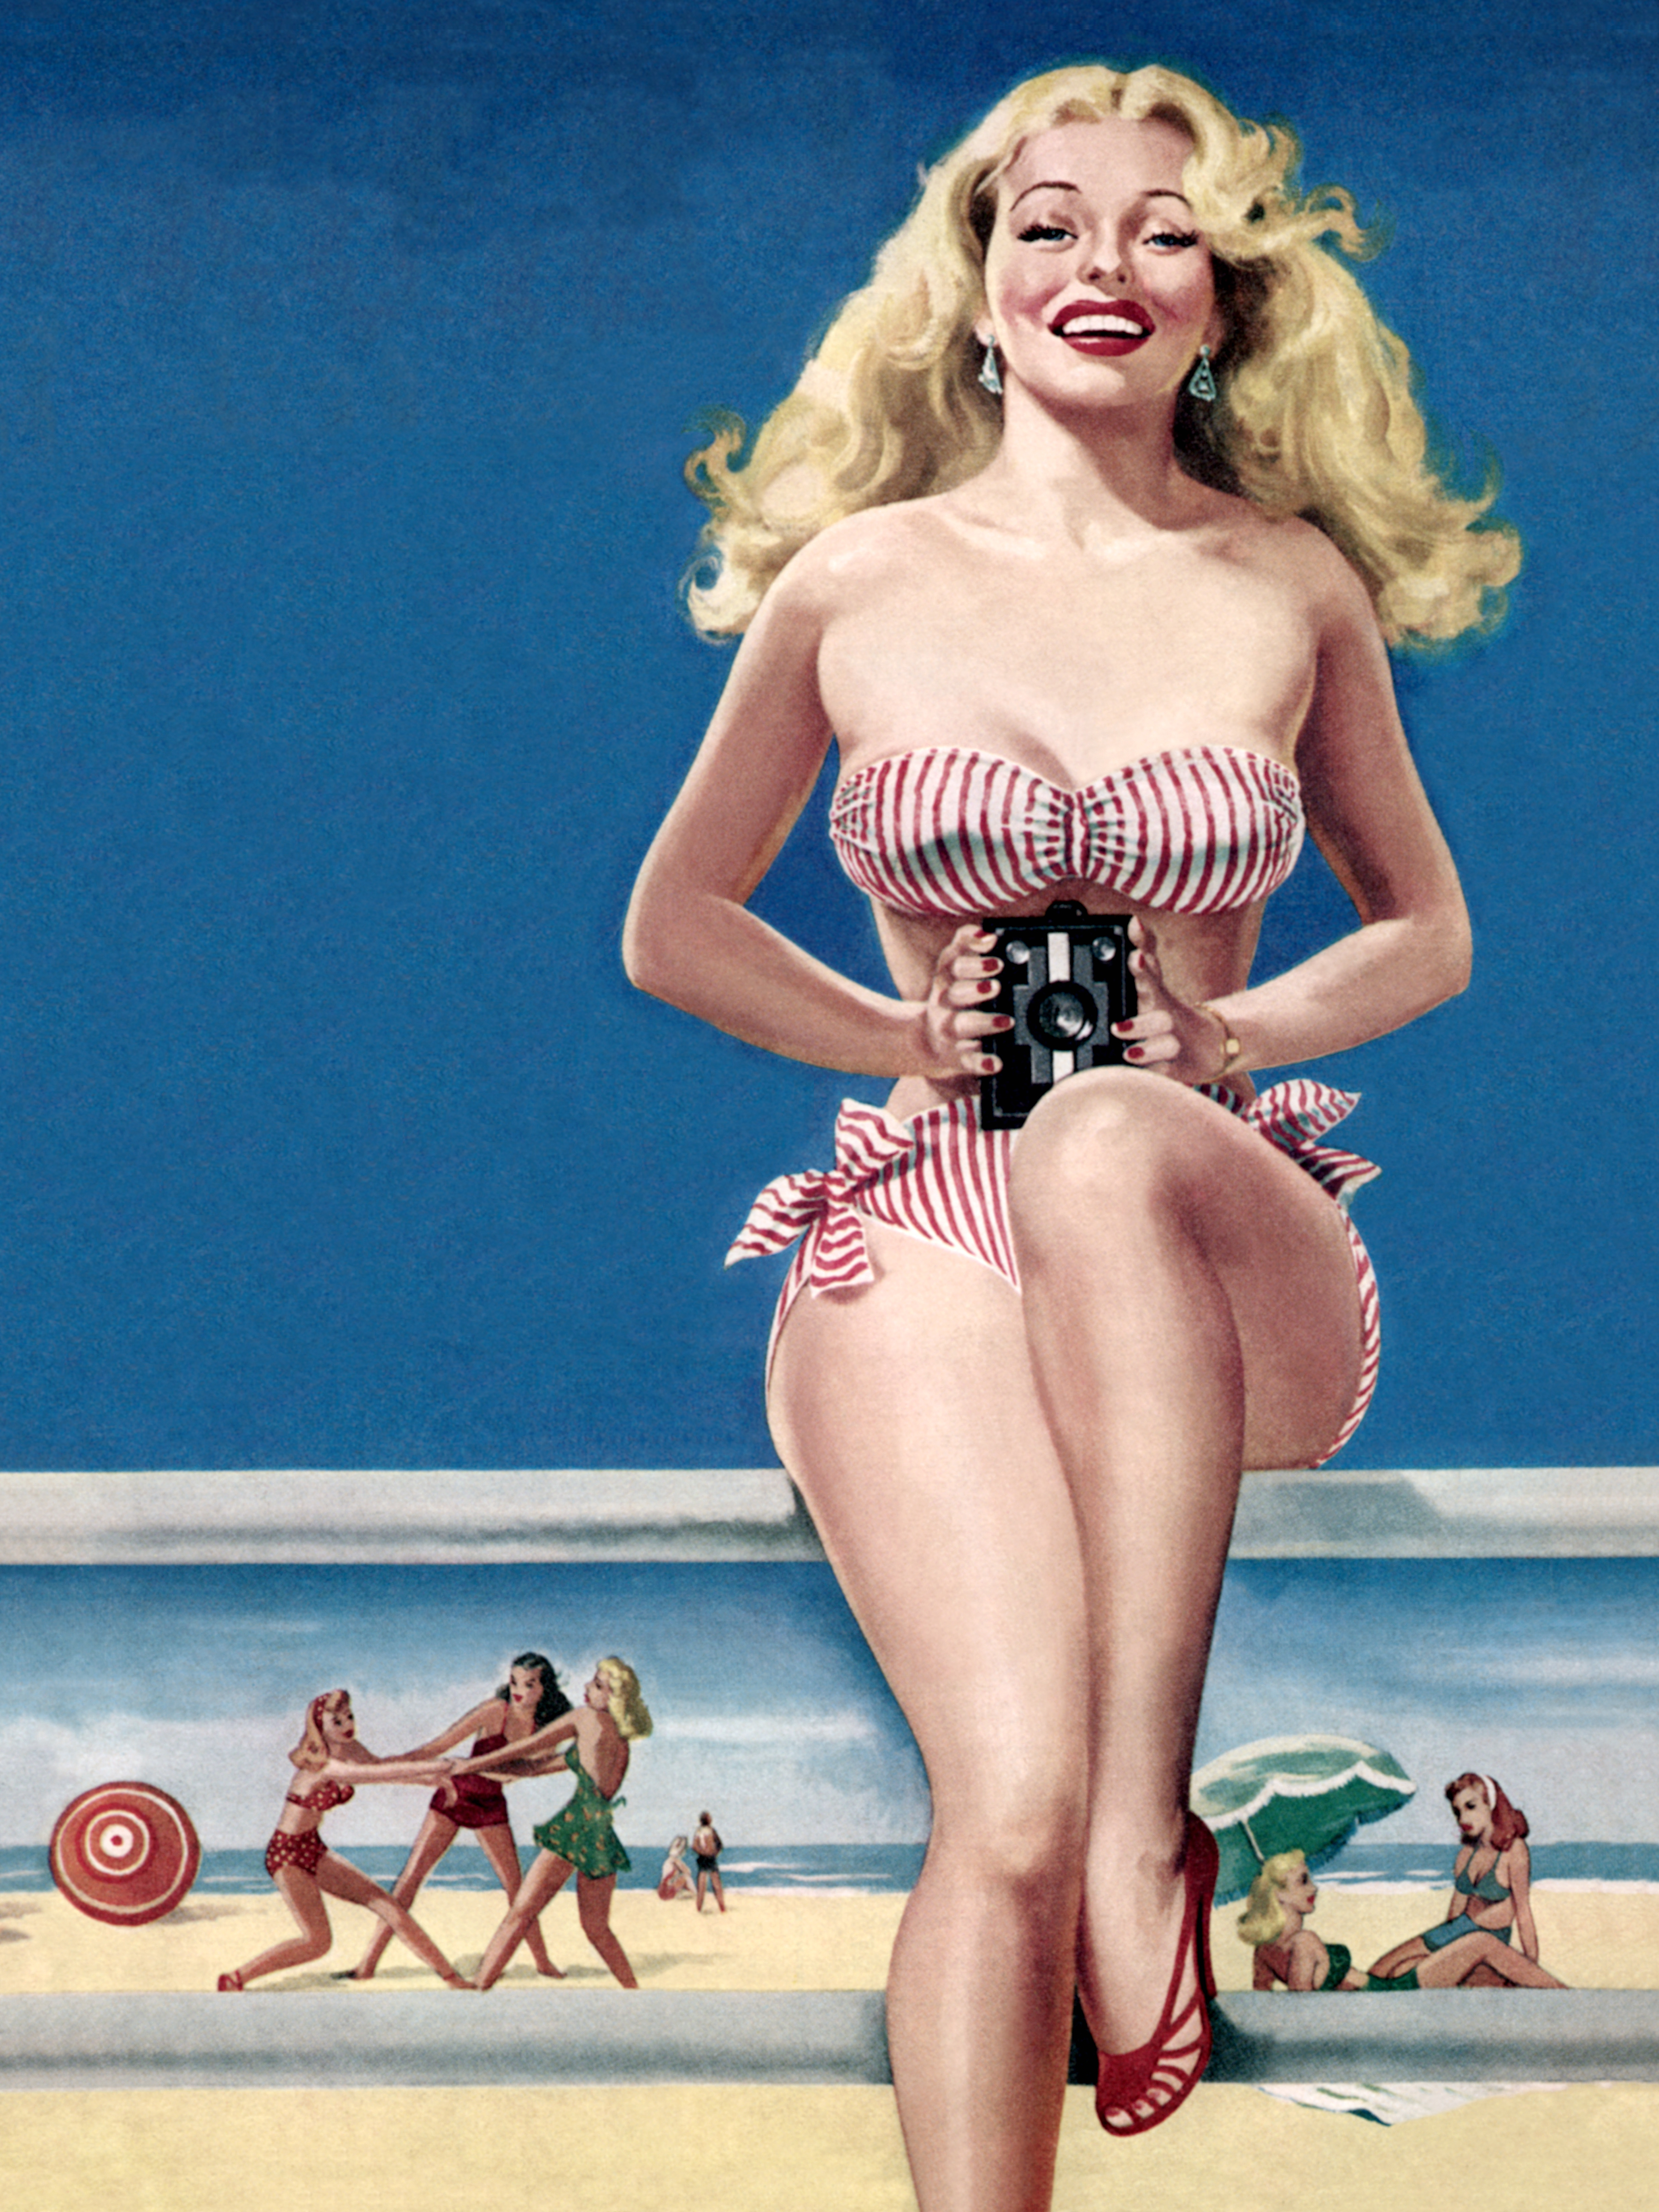 Сайт пин ап pinbetwin. Питер Дрибен. Постеры 50-х годов. Пин ап девушки. Постеры в стиле 60-х годов Америка.